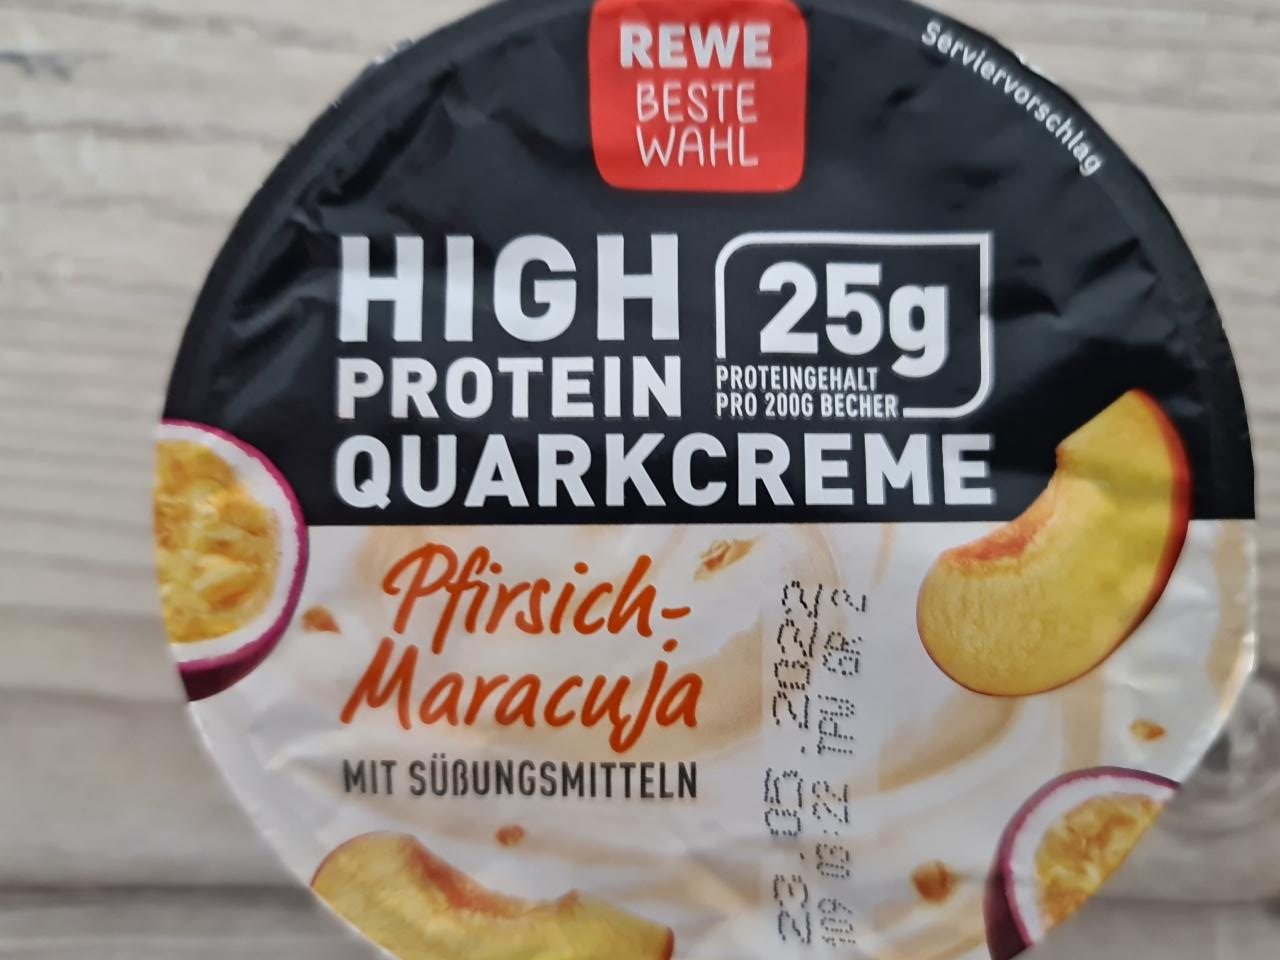 Fotografie - High Protein Quarkcreme Pfirsich-Maracuja Rewe beste wahl